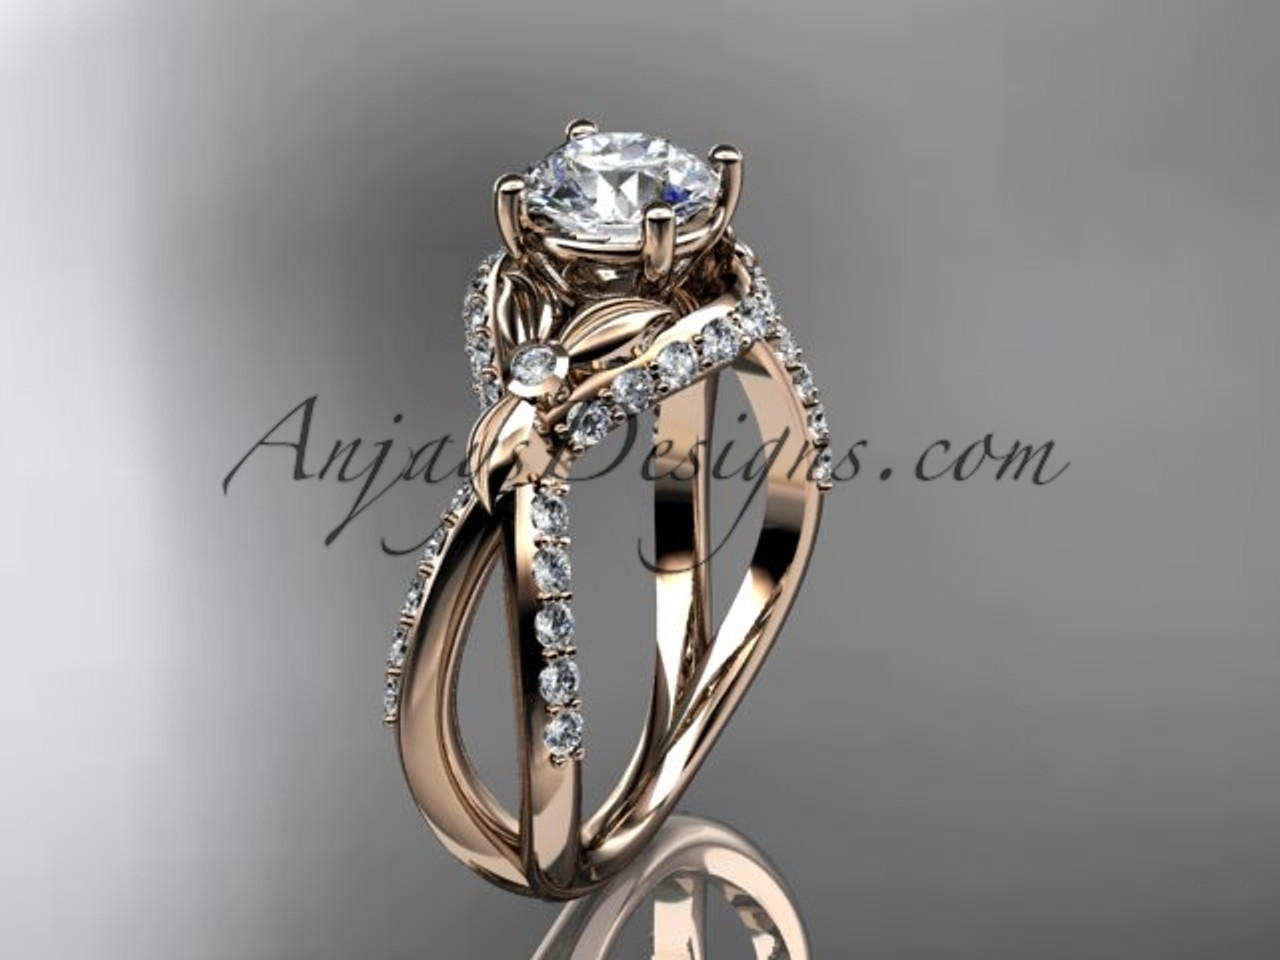 Designer Rings, Luxury Diamond & Gold Rings